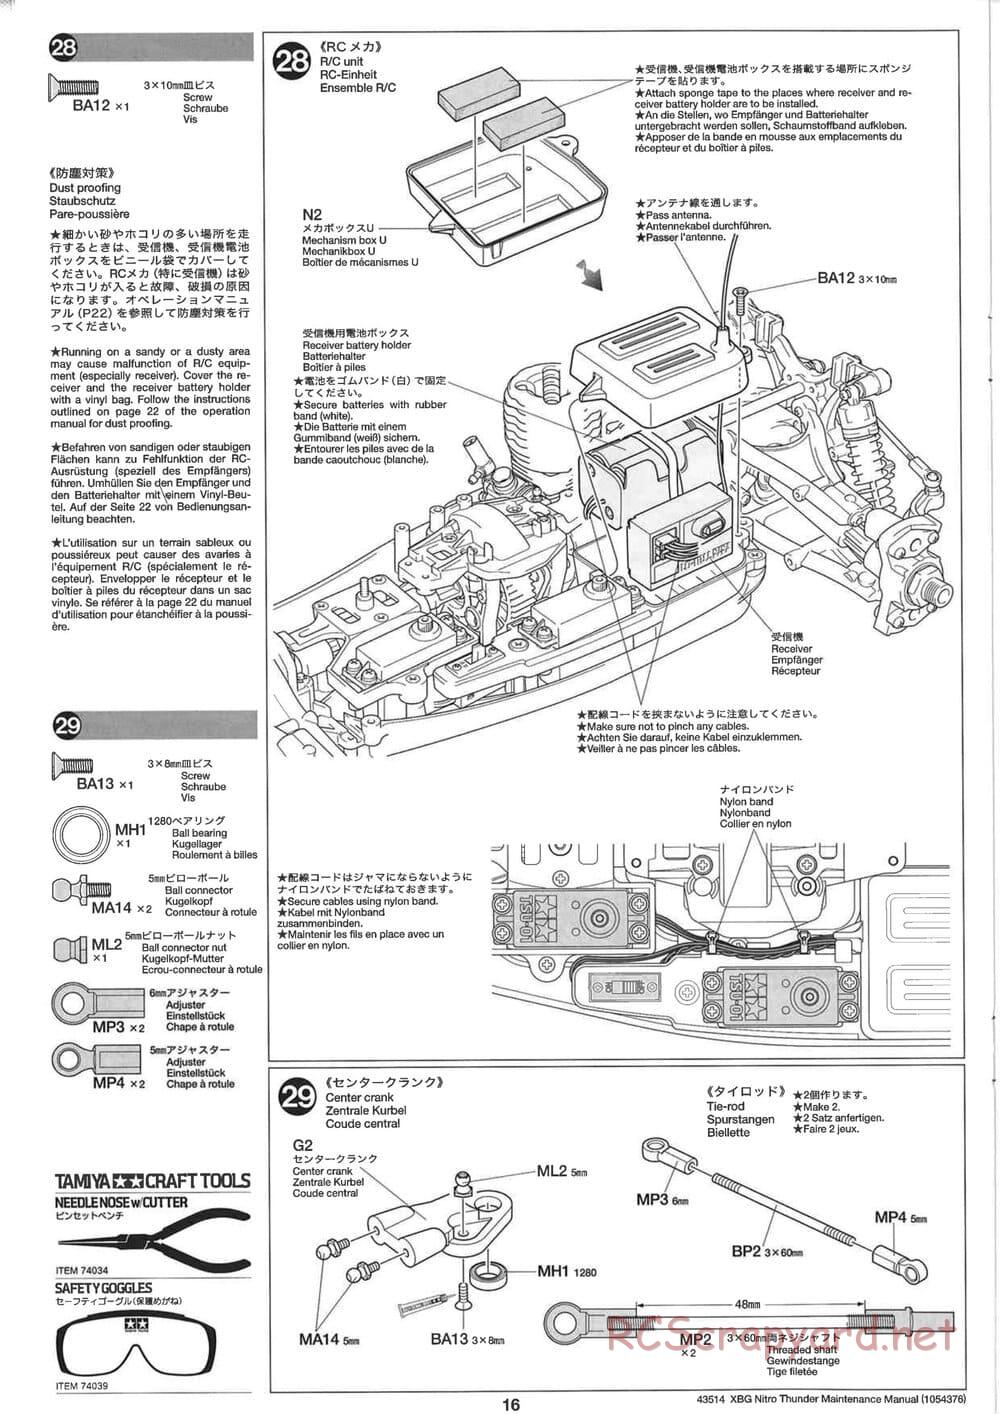 Tamiya - Nitro Thunder - NDF-01 Chassis - Manual - Page 16